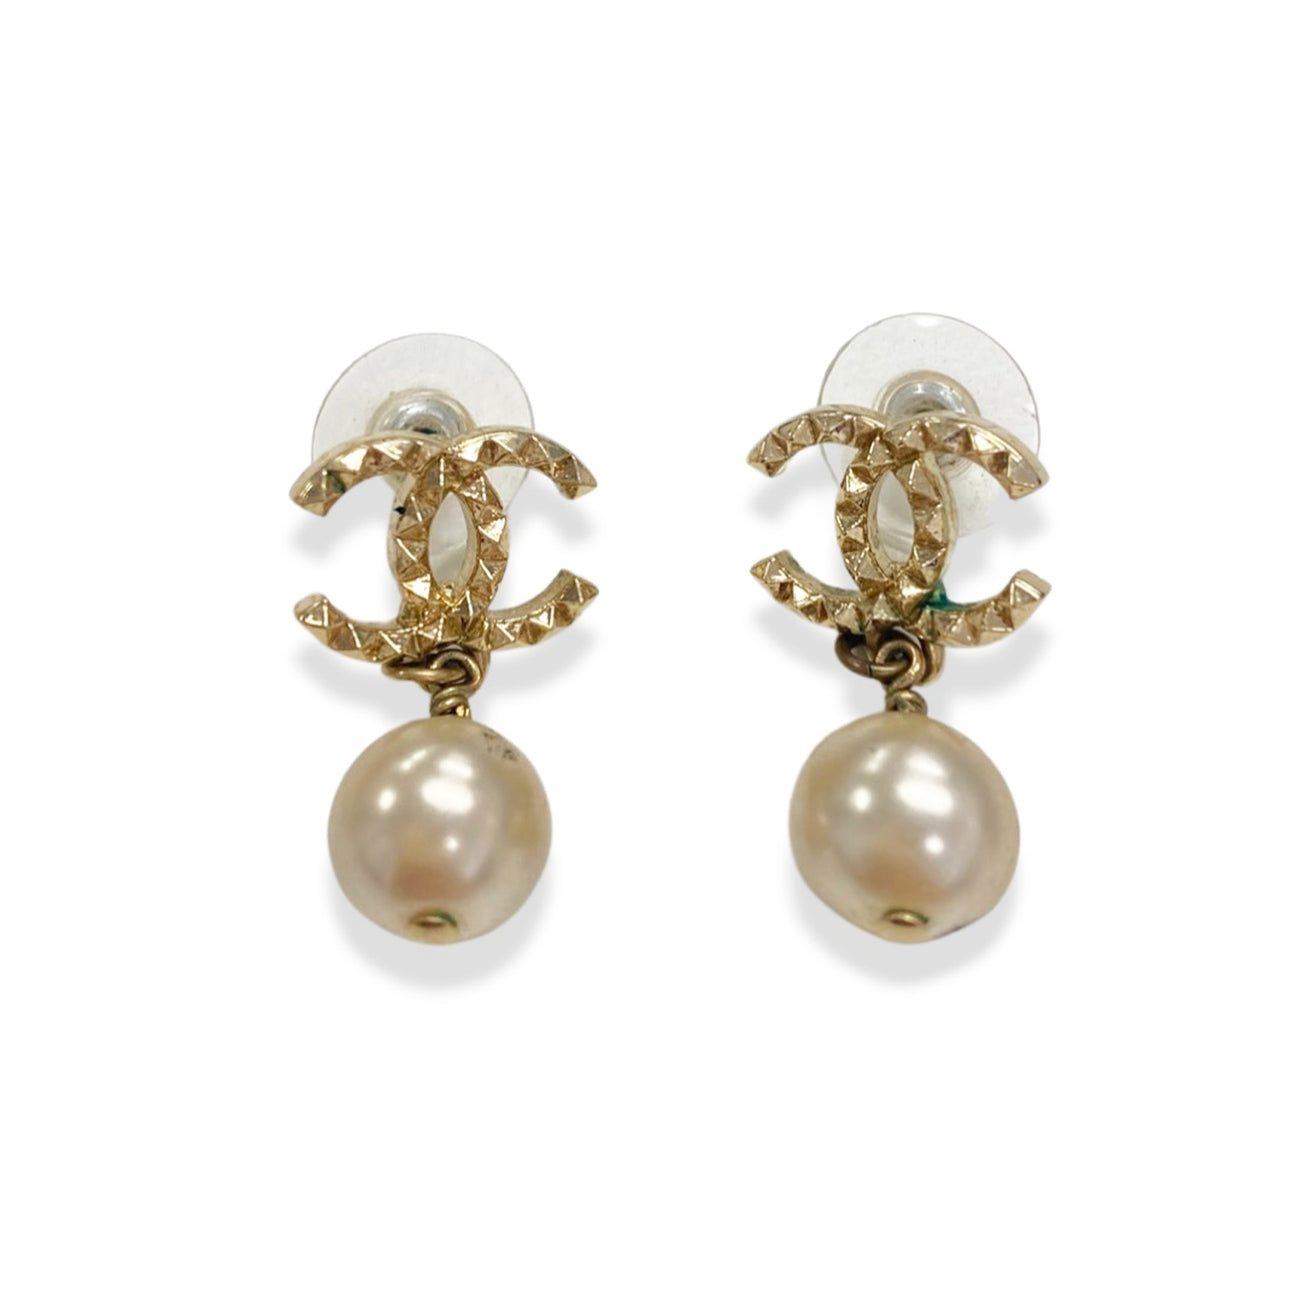 Cc earrings Chanel Gold in Metal - 36036455